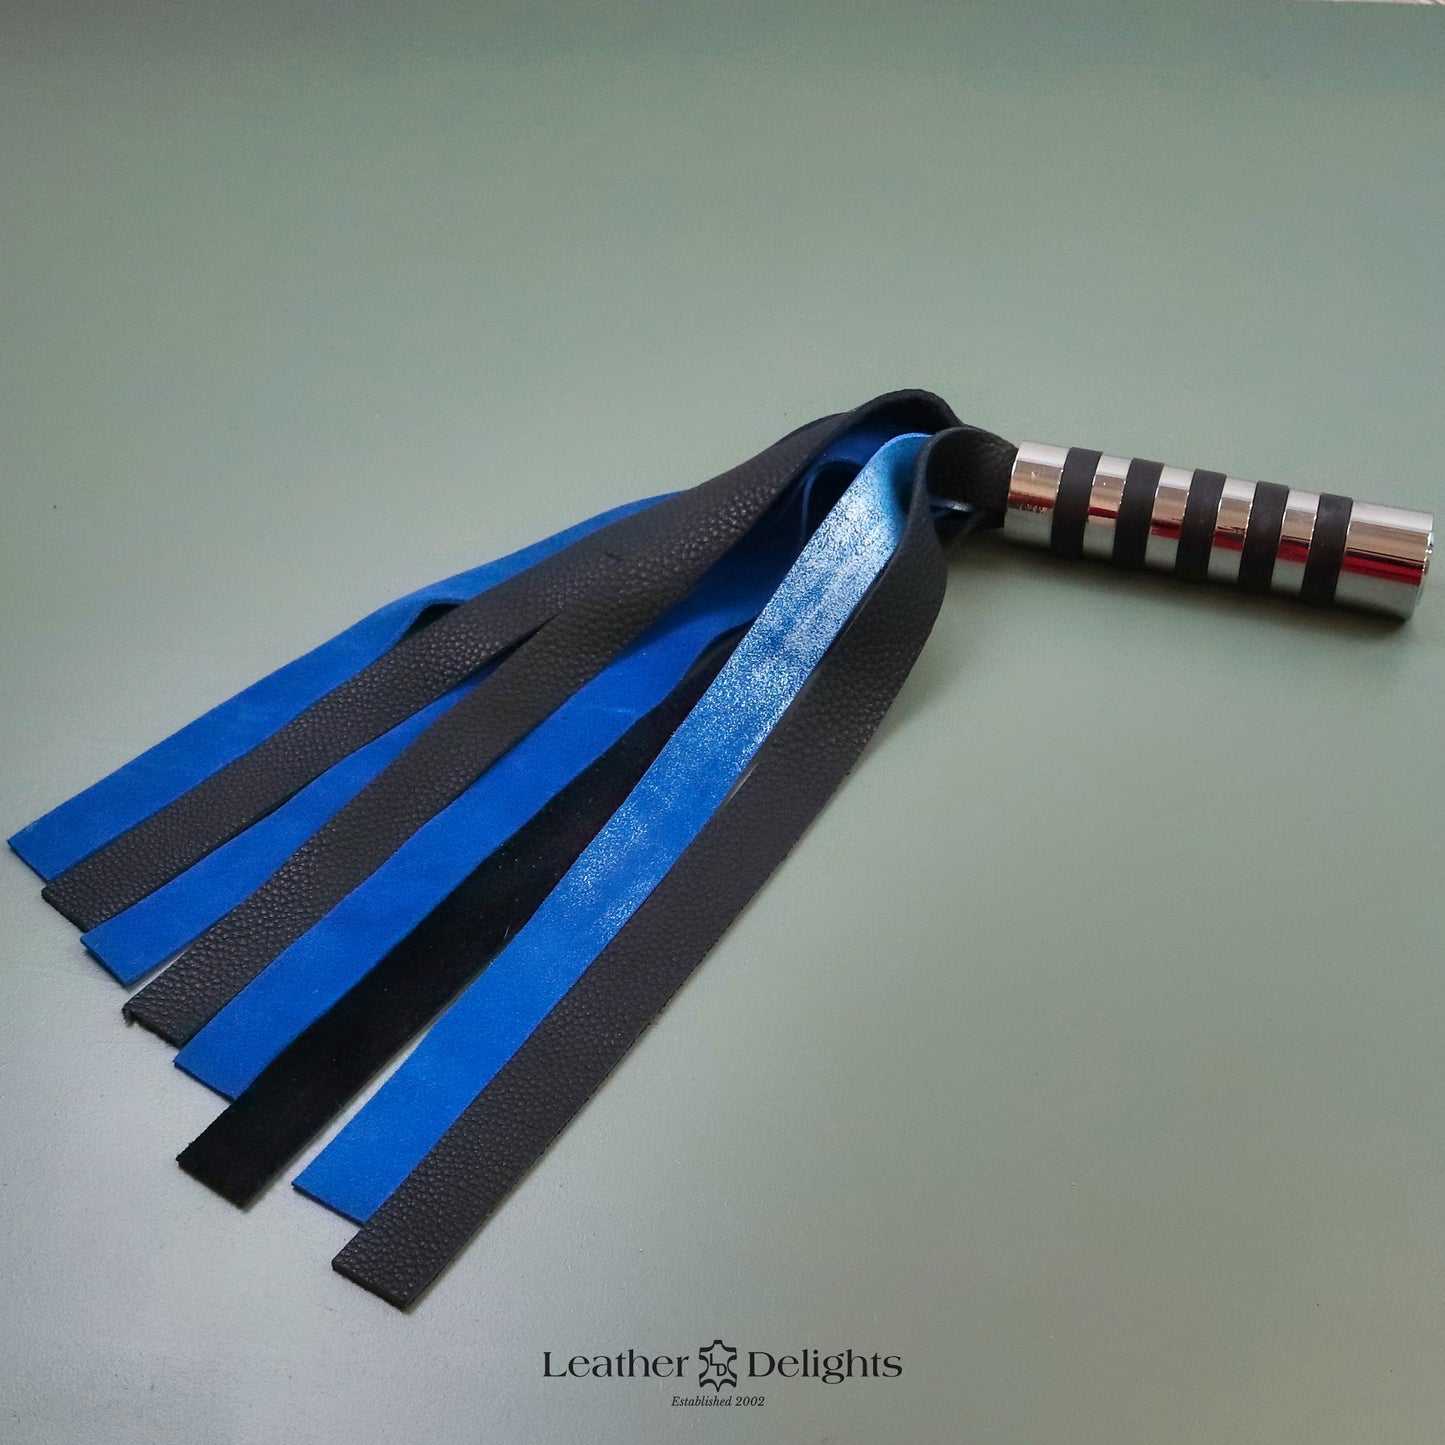 Angelaufene Peitsche aus metallisch blauem Wildleder und schwarzem Leder mit silbernem Griff